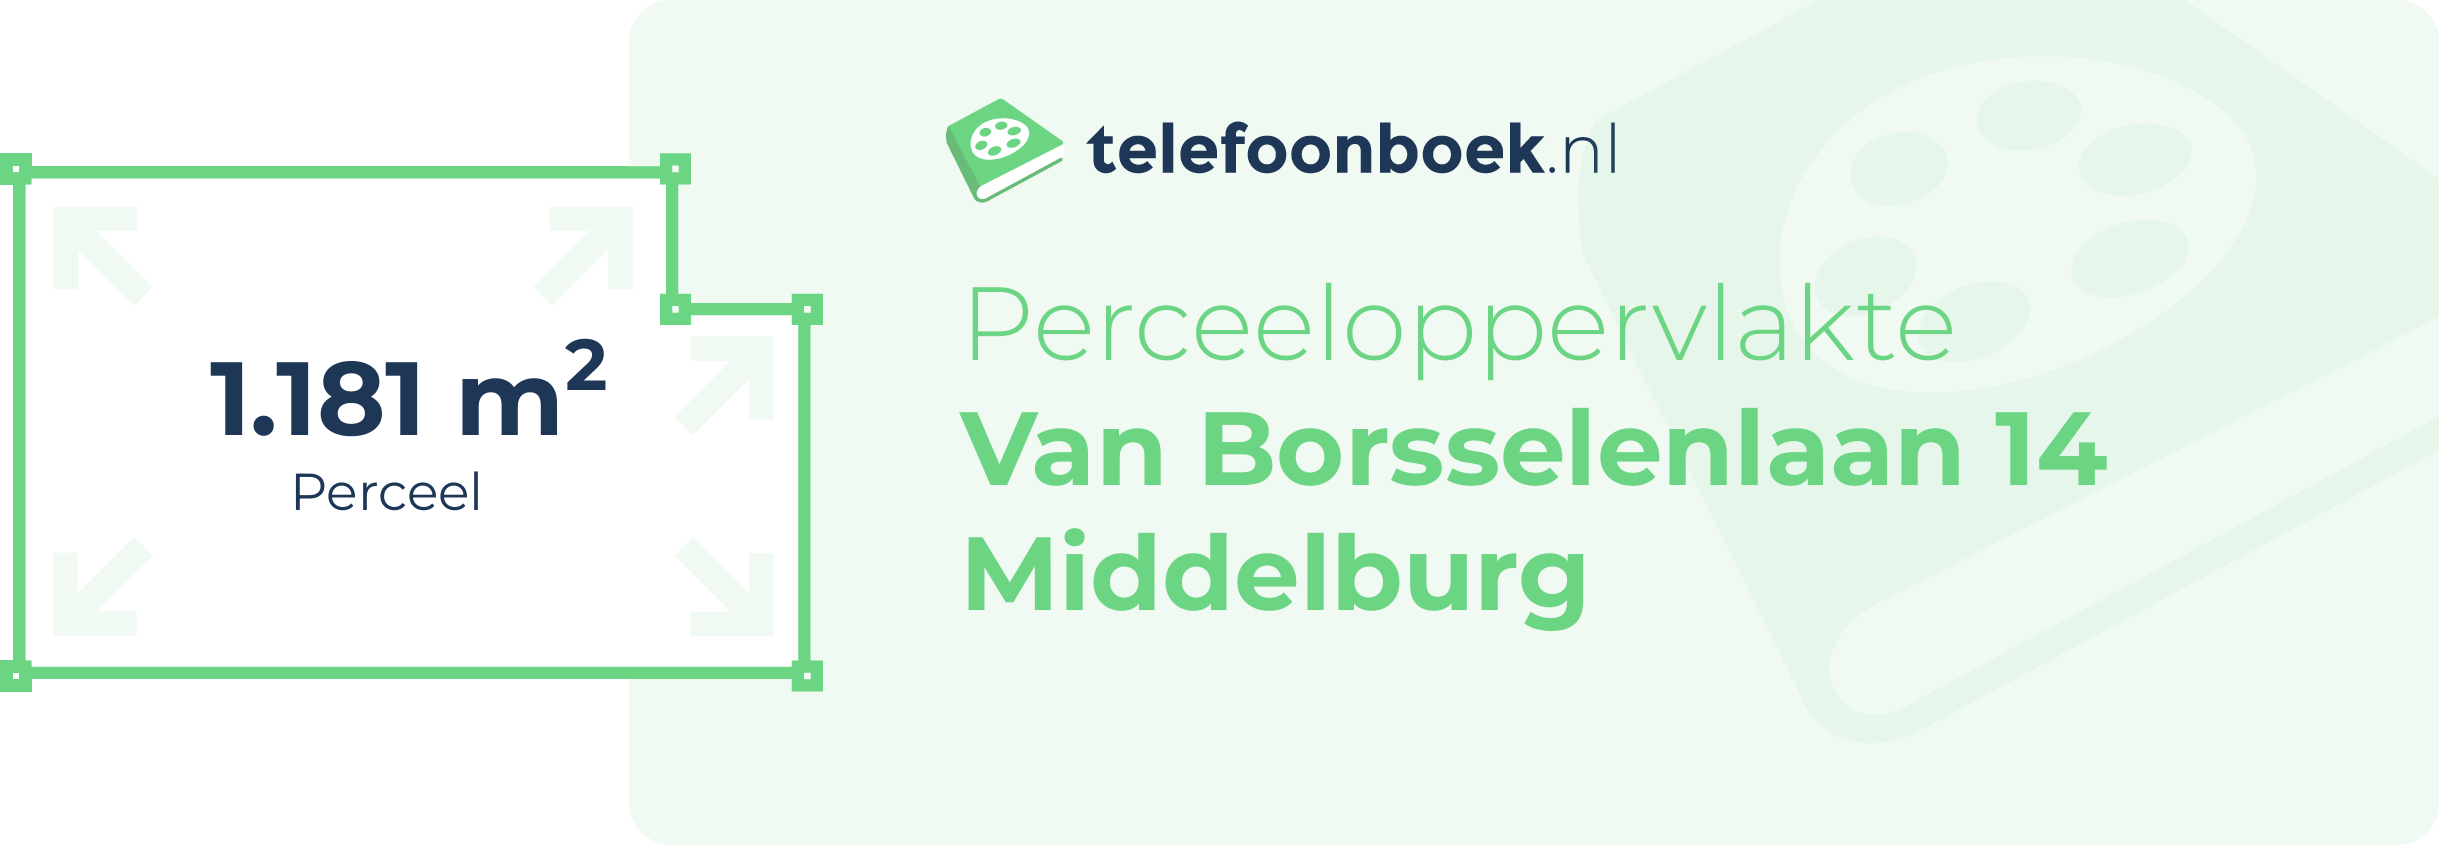 Perceeloppervlakte Van Borsselenlaan 14 Middelburg